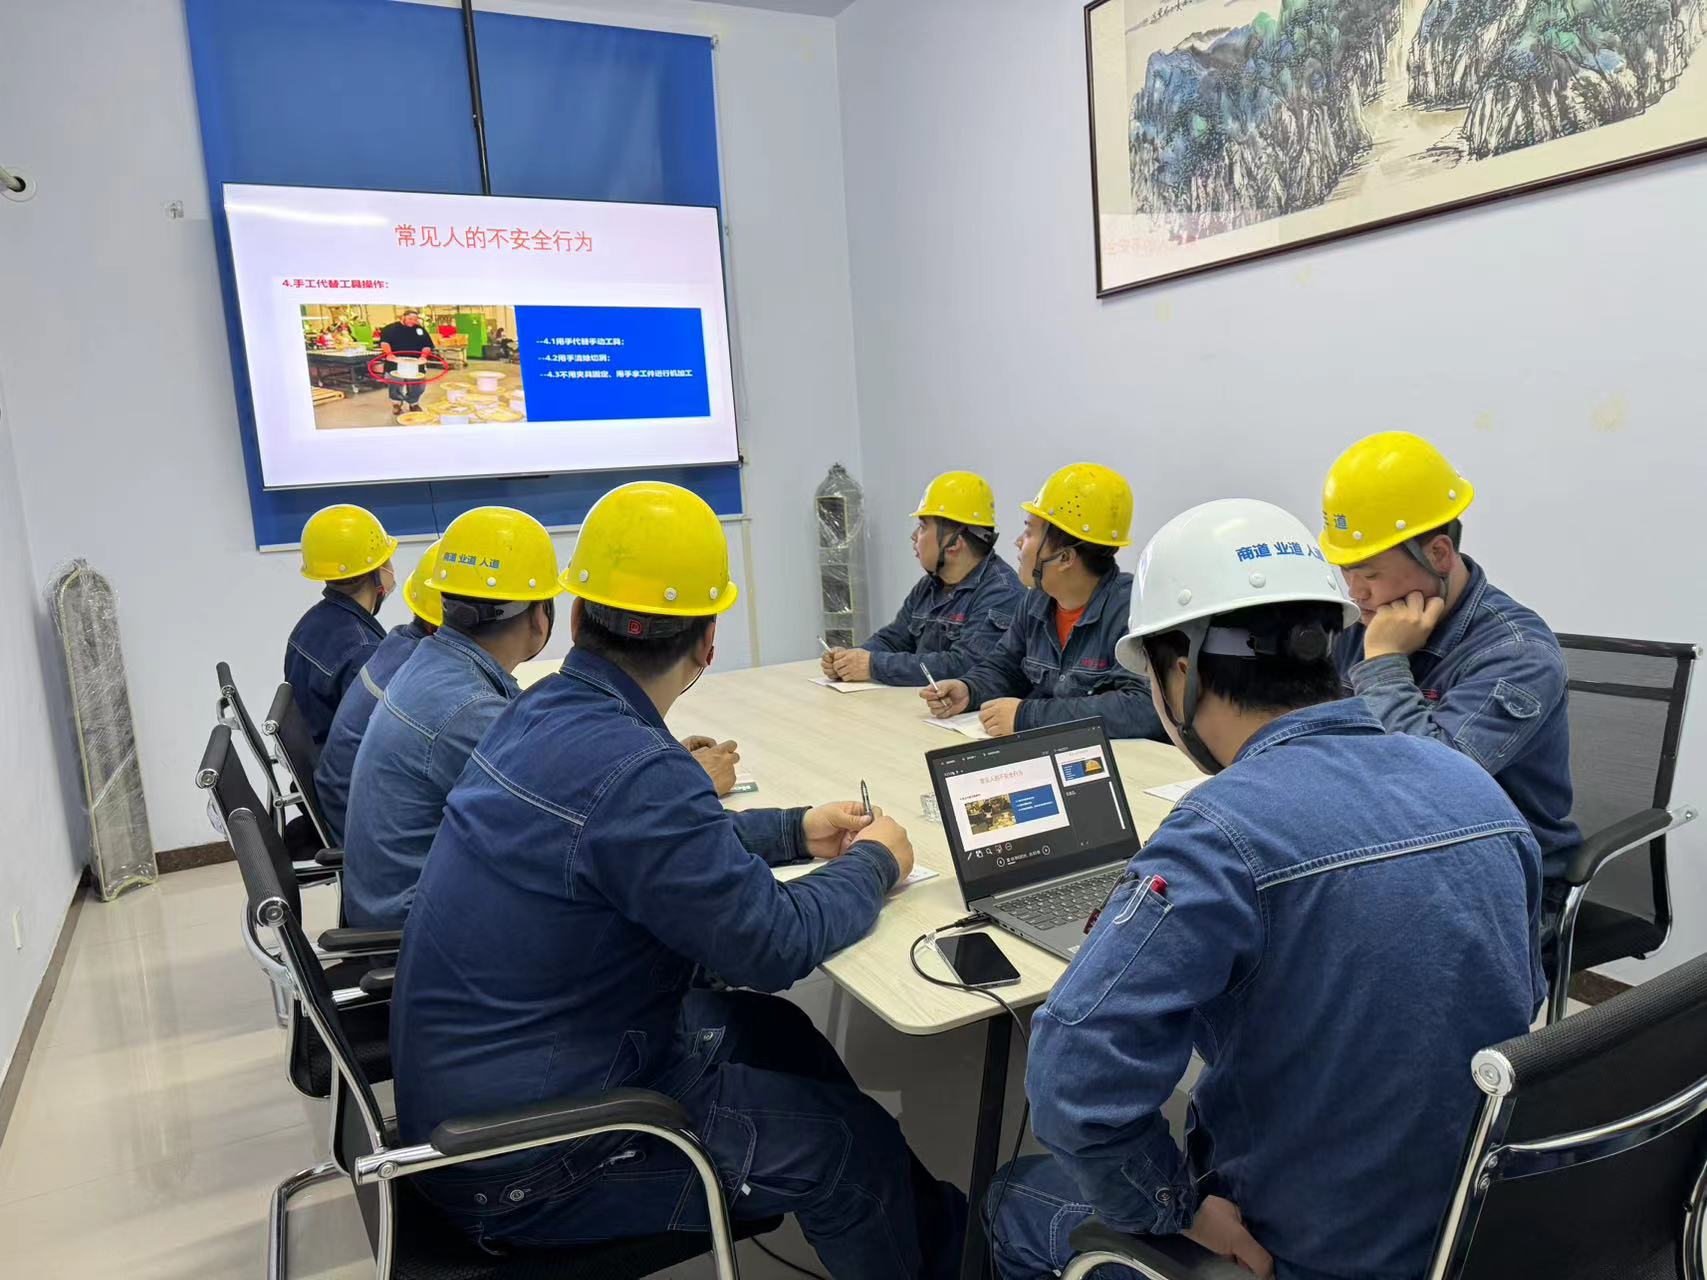 郑州三道特气钢瓶技术有限公司开展机械伤害知识培训